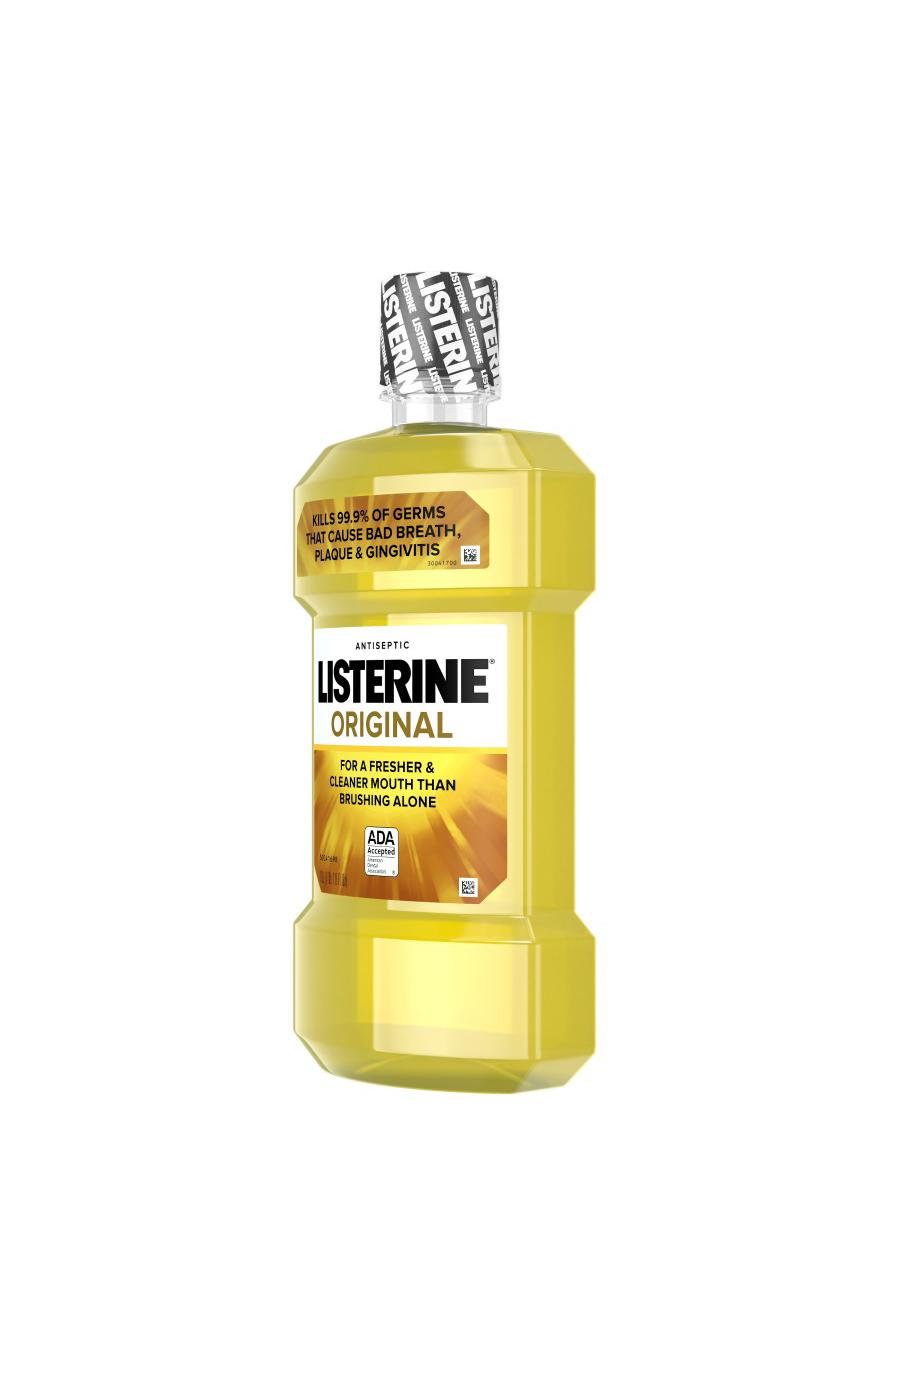 Listerine Original Antiseptic Mouthwash; image 5 of 6